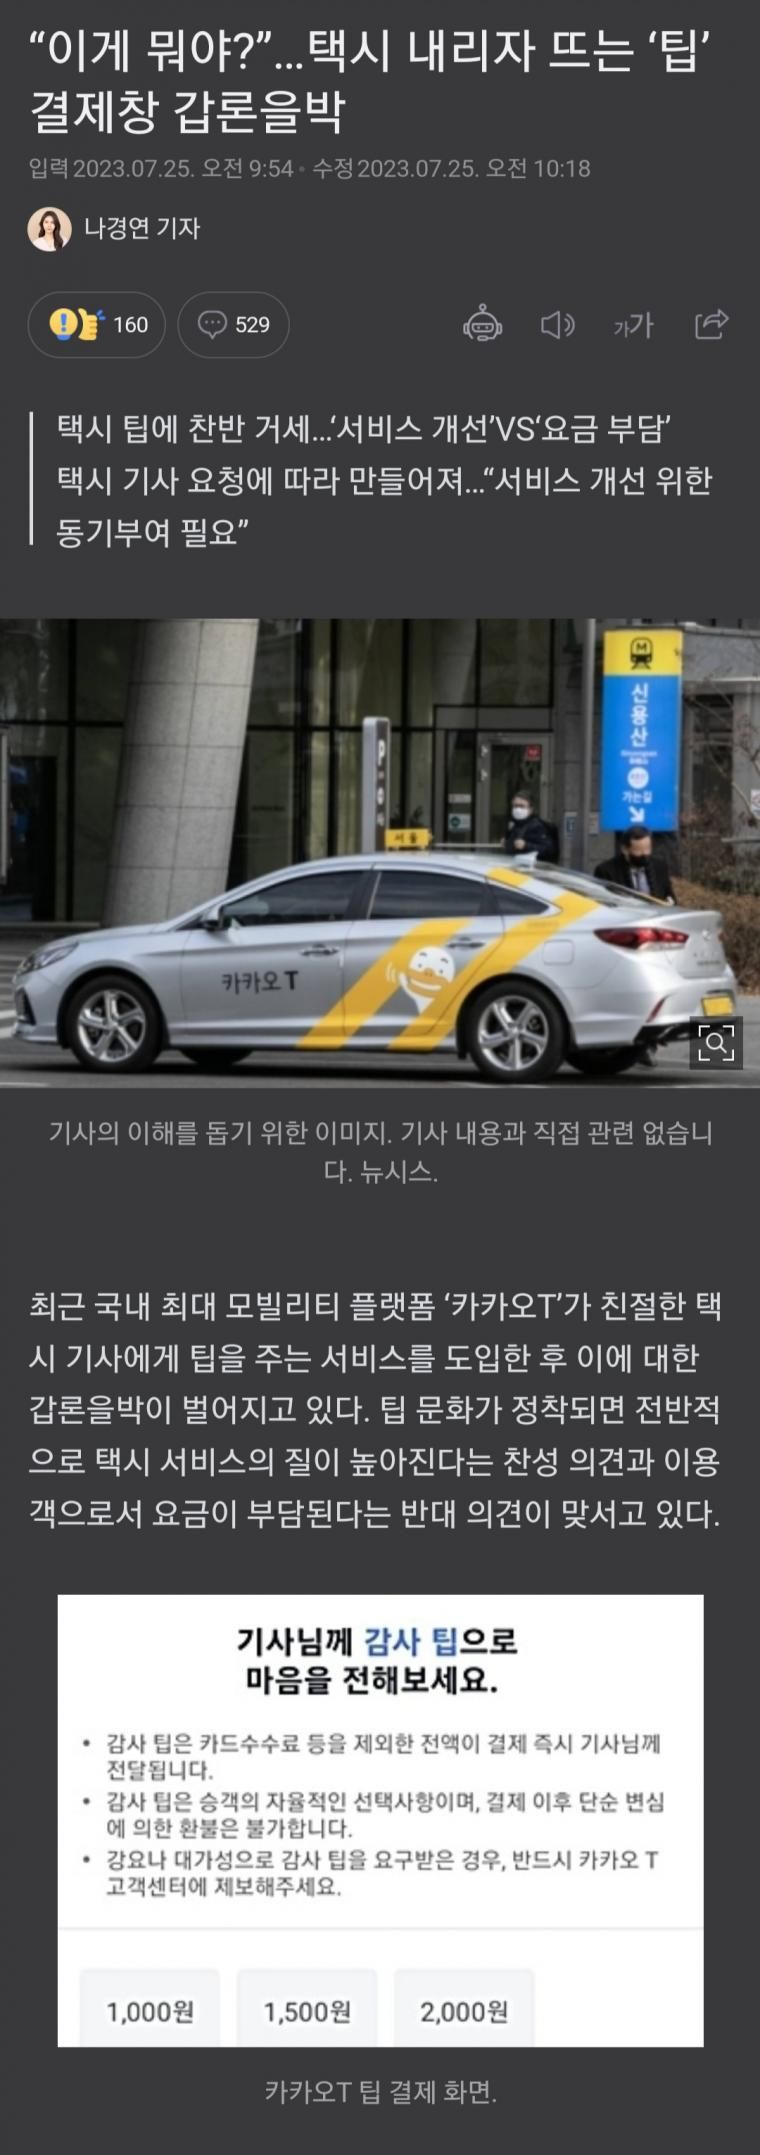 카카오 택시 팁 결제창 논란